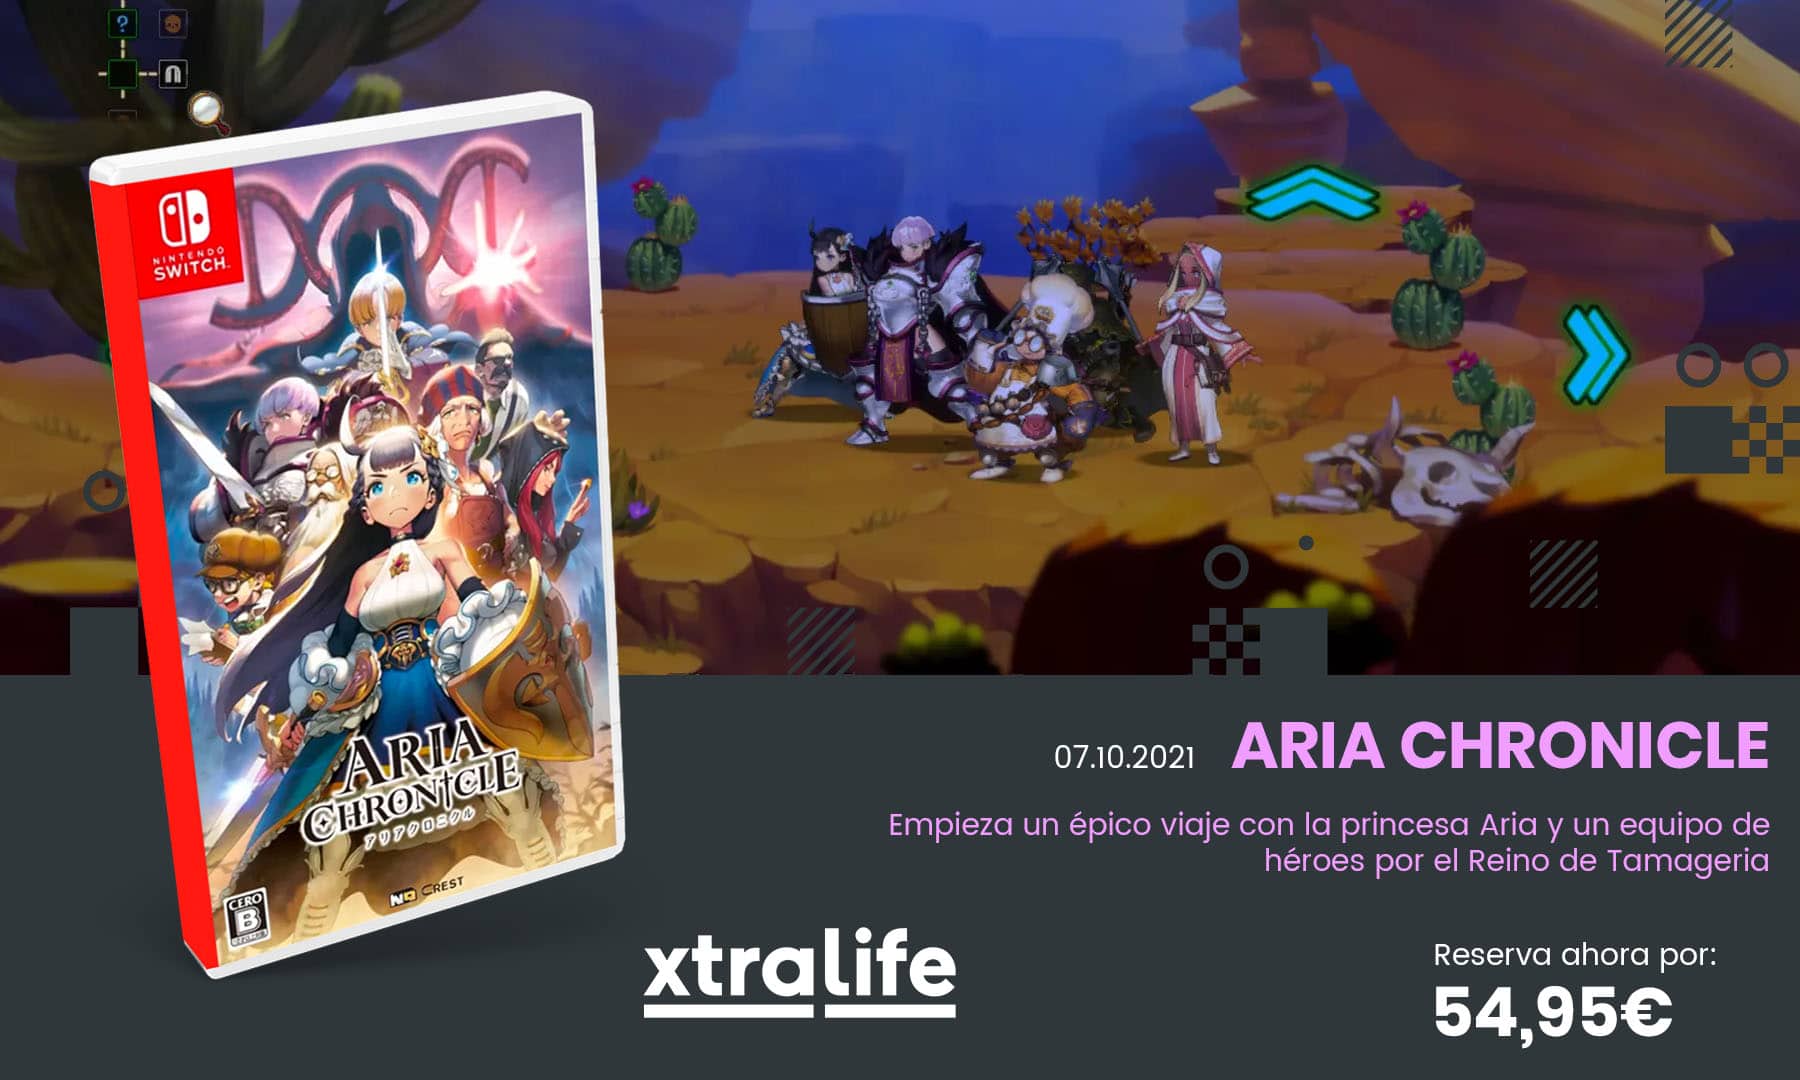 Empieza un épico viaje con la princesa Aria en Aria Chronicle: reserva disponible